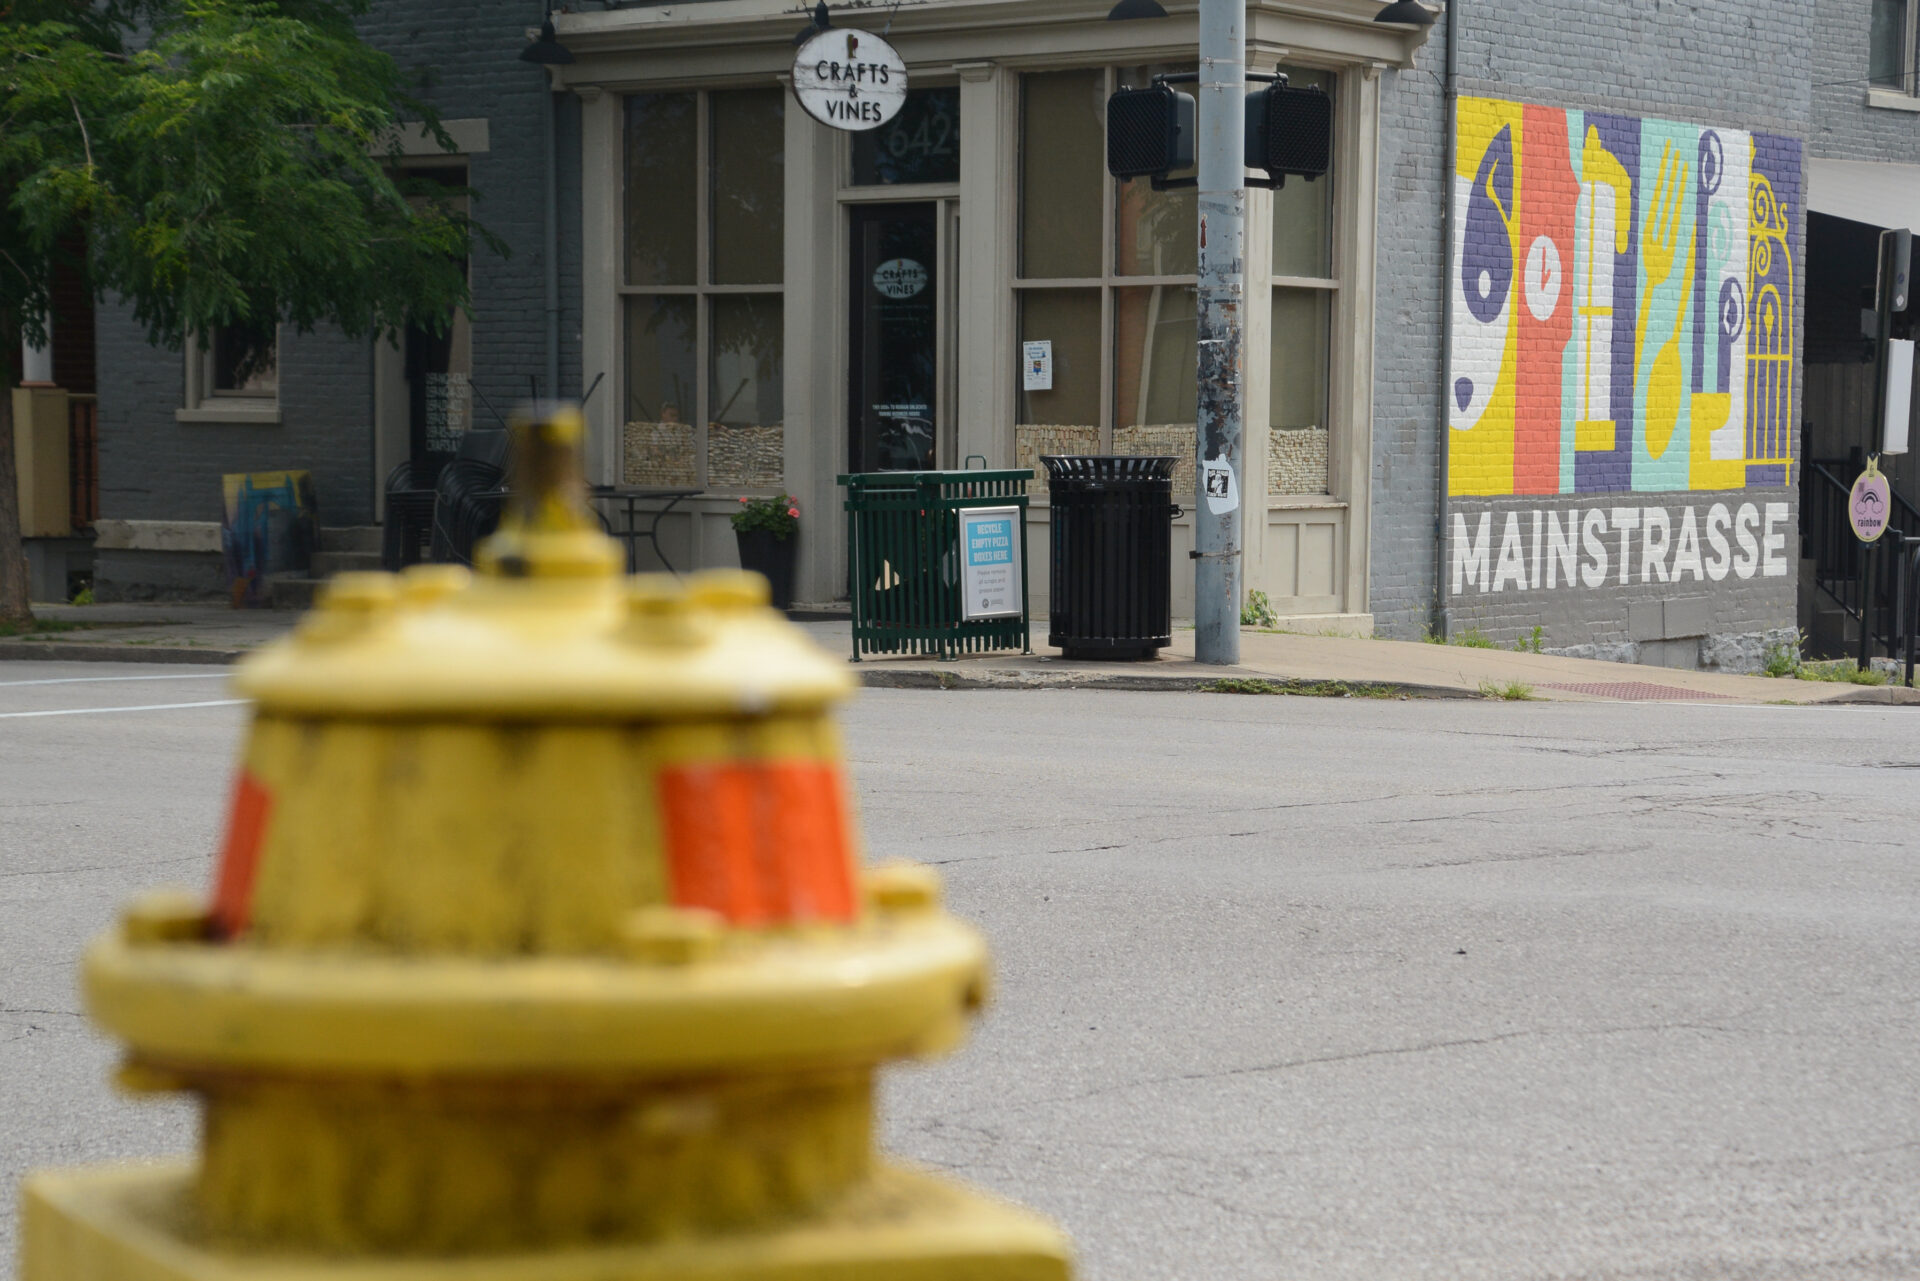 Hydrant vor dem Wandgemälde mit der Aufschrift "Mainstrasse" in Covington, Kentucky